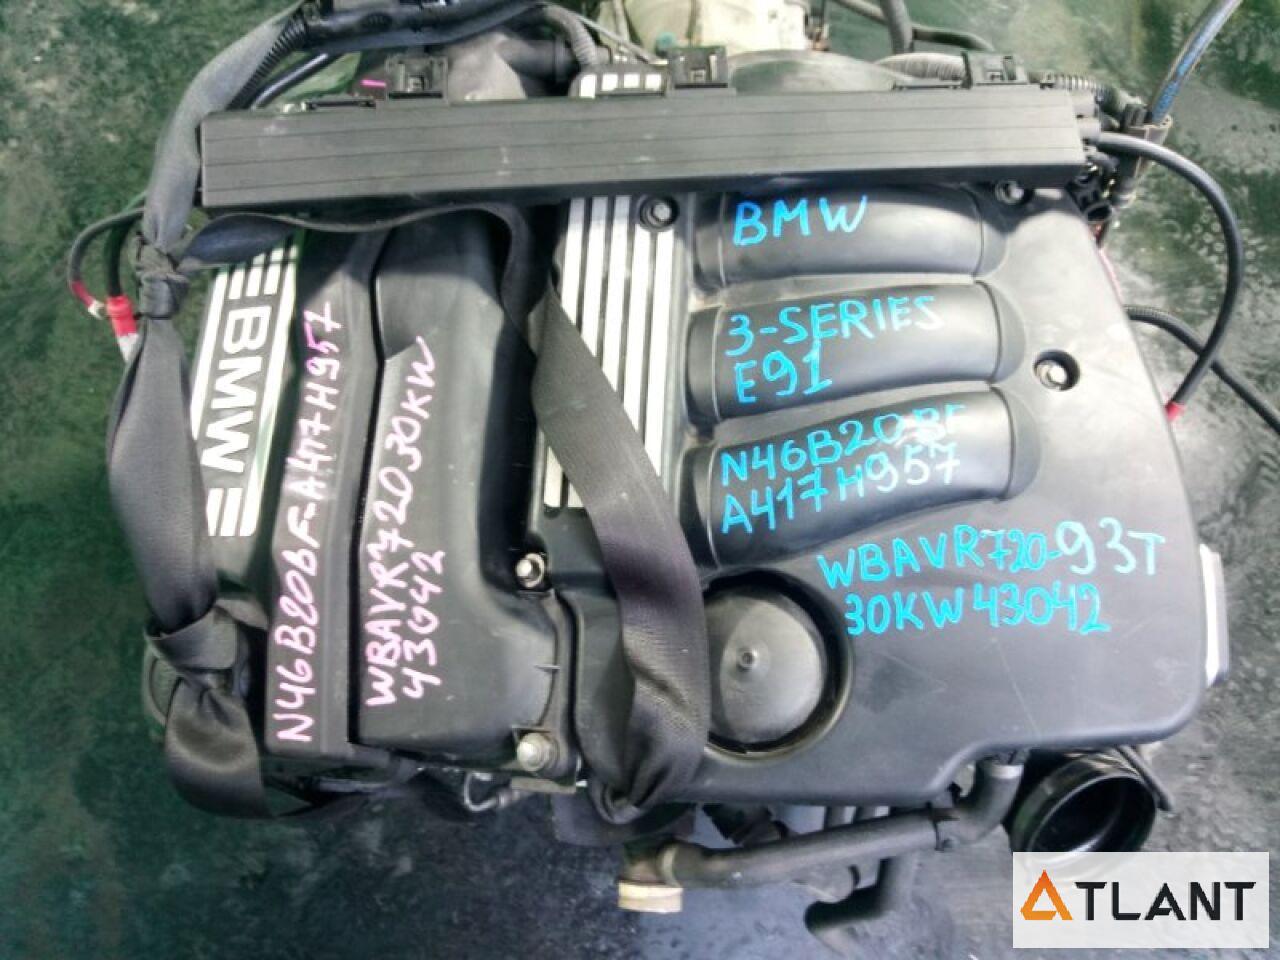 Запчасть Двигатель  BMW 3 SERIES A417H957 Контрактный коса, мозги, А/Т, 2WD, без катализатора, крышка лом, 93 км